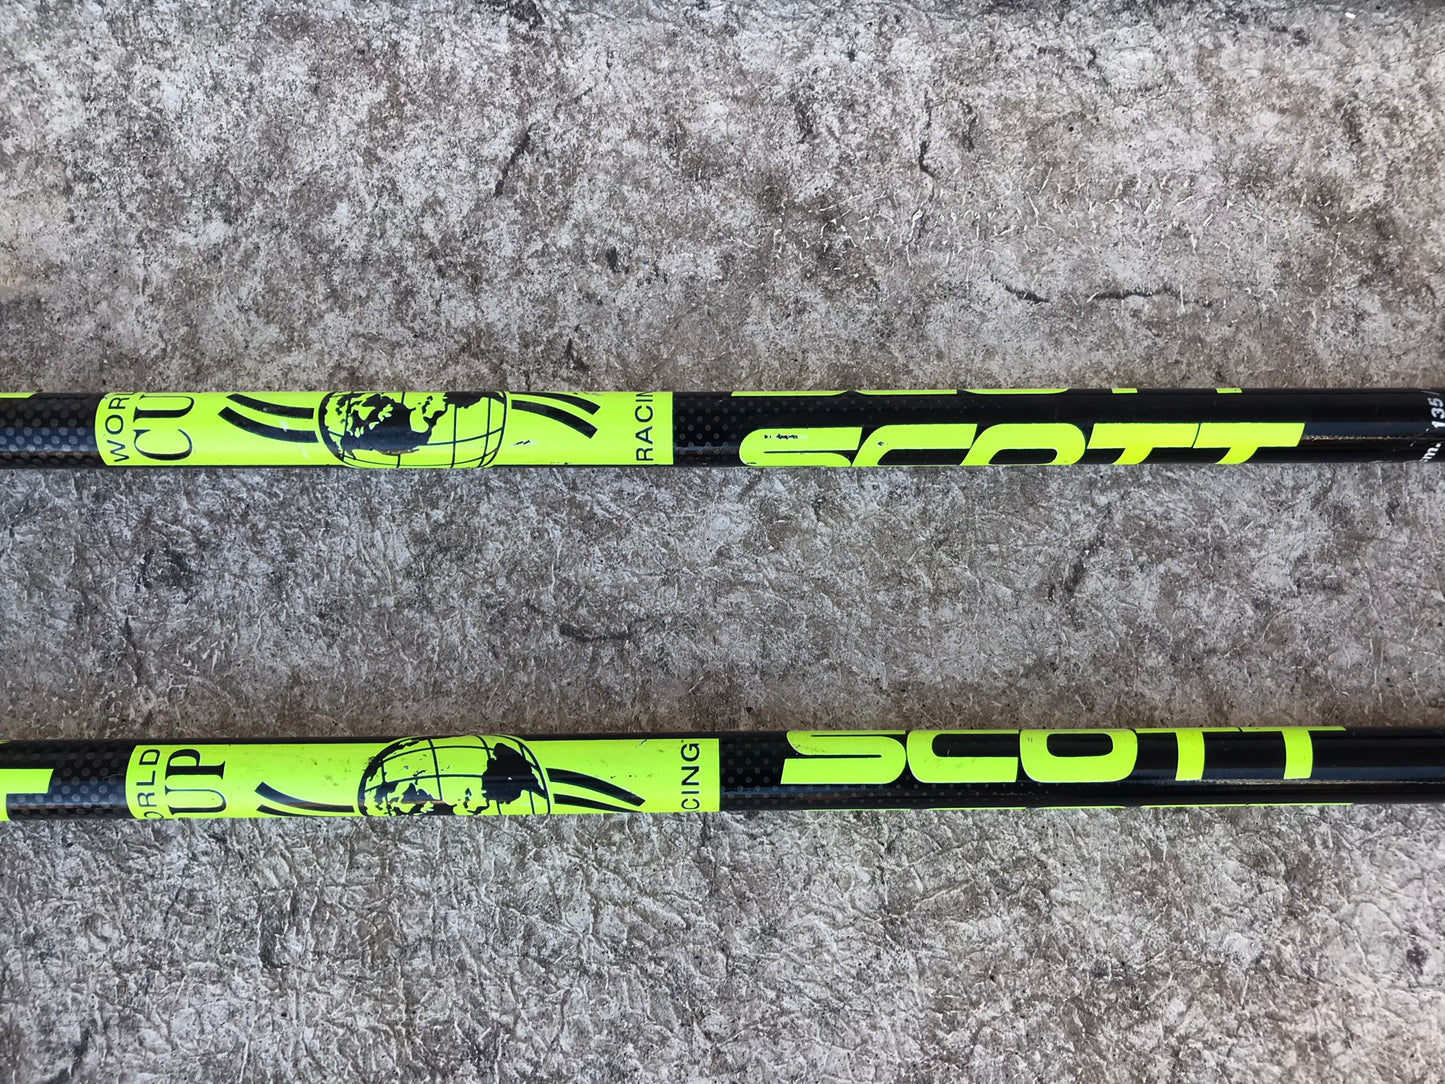 Ski Poles Adult Size 46 inch 115 cm Scott Racing Black Lime Rubber Handles Excellent